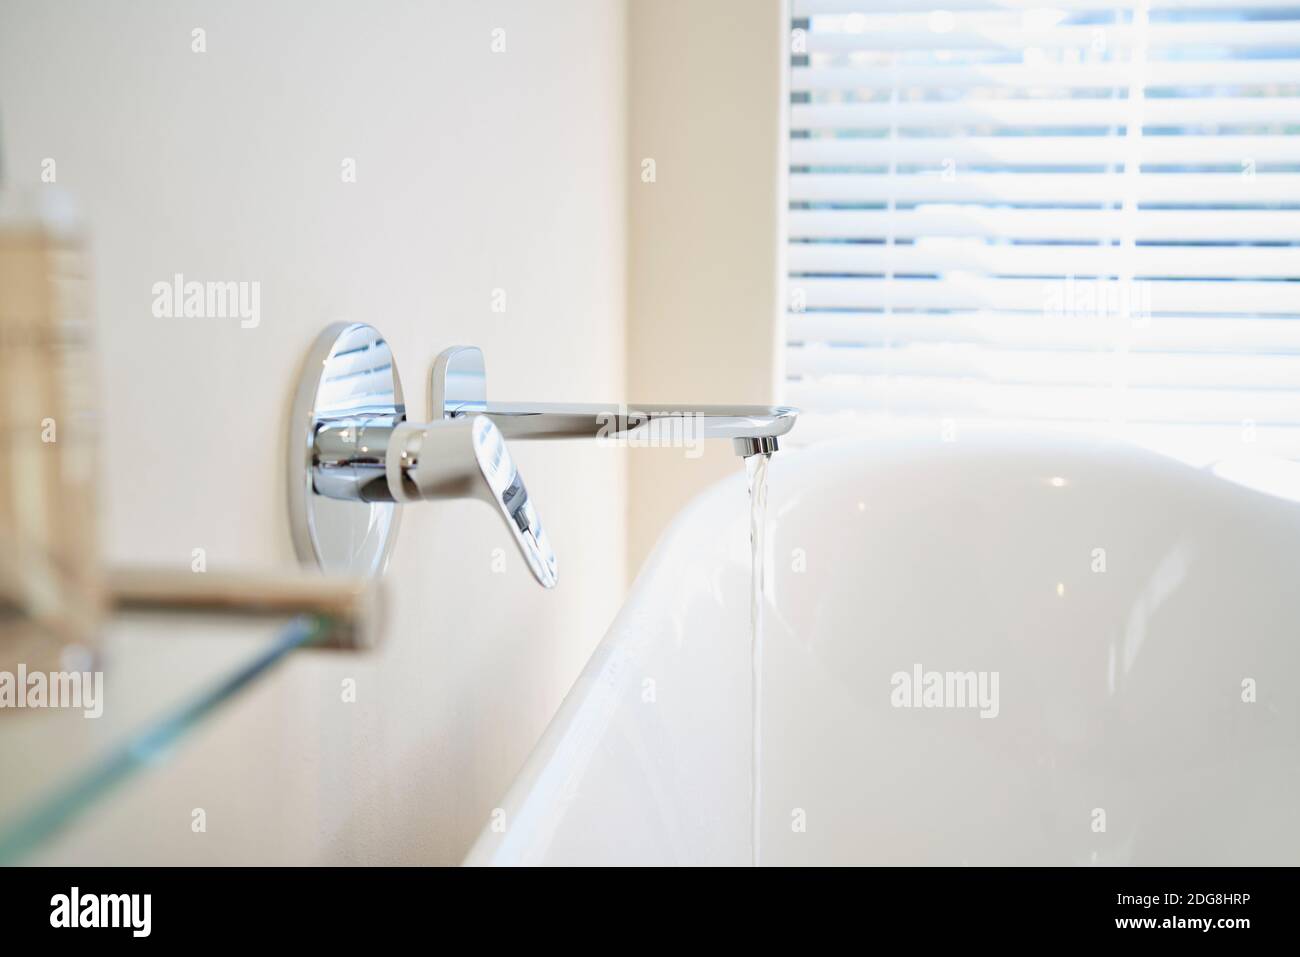 Schließen Sie das Wasser aus dem Wasserhahn, der die weiße Wanne einfüllt Badezimmer Stockfoto